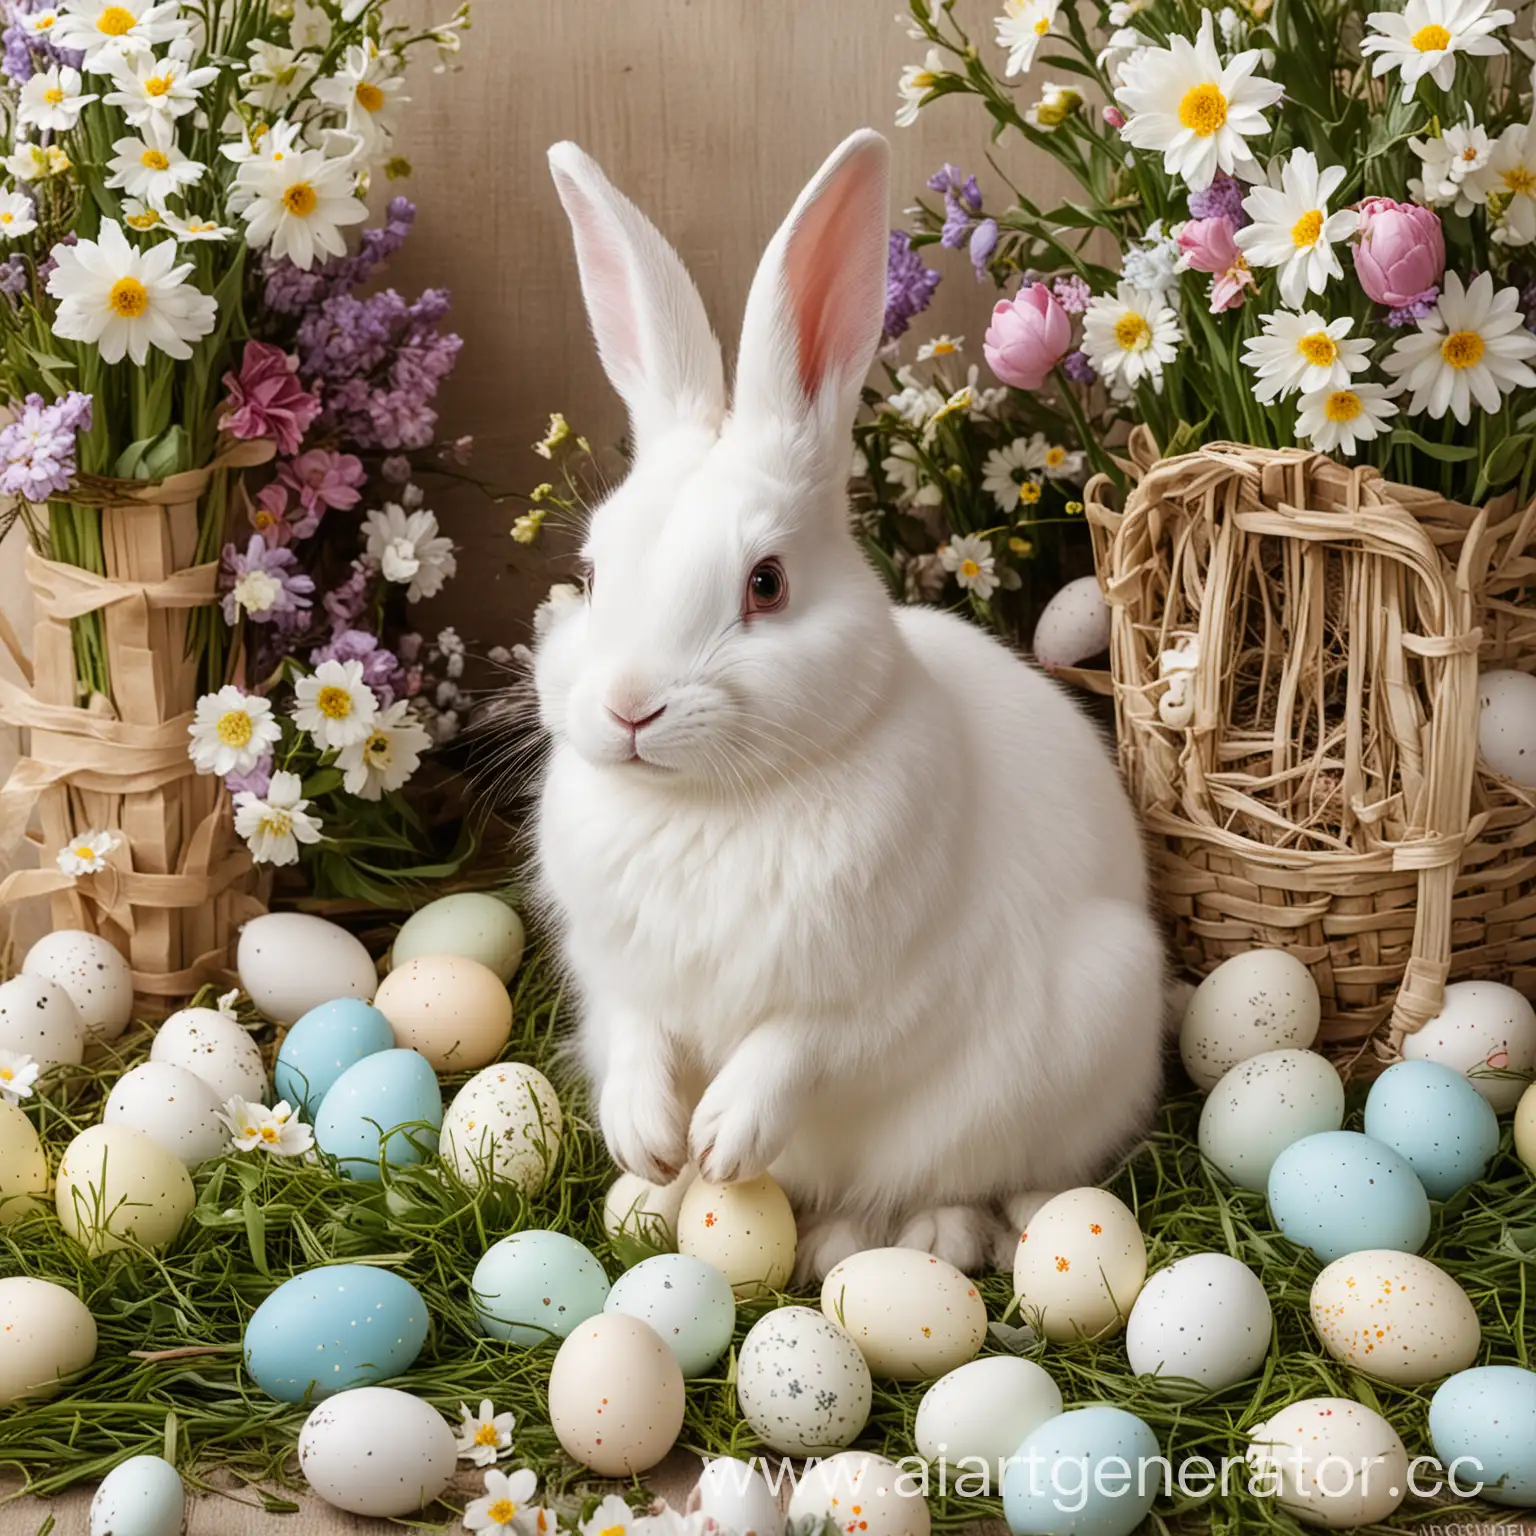 white rabbit, Easter, eggs, flowers